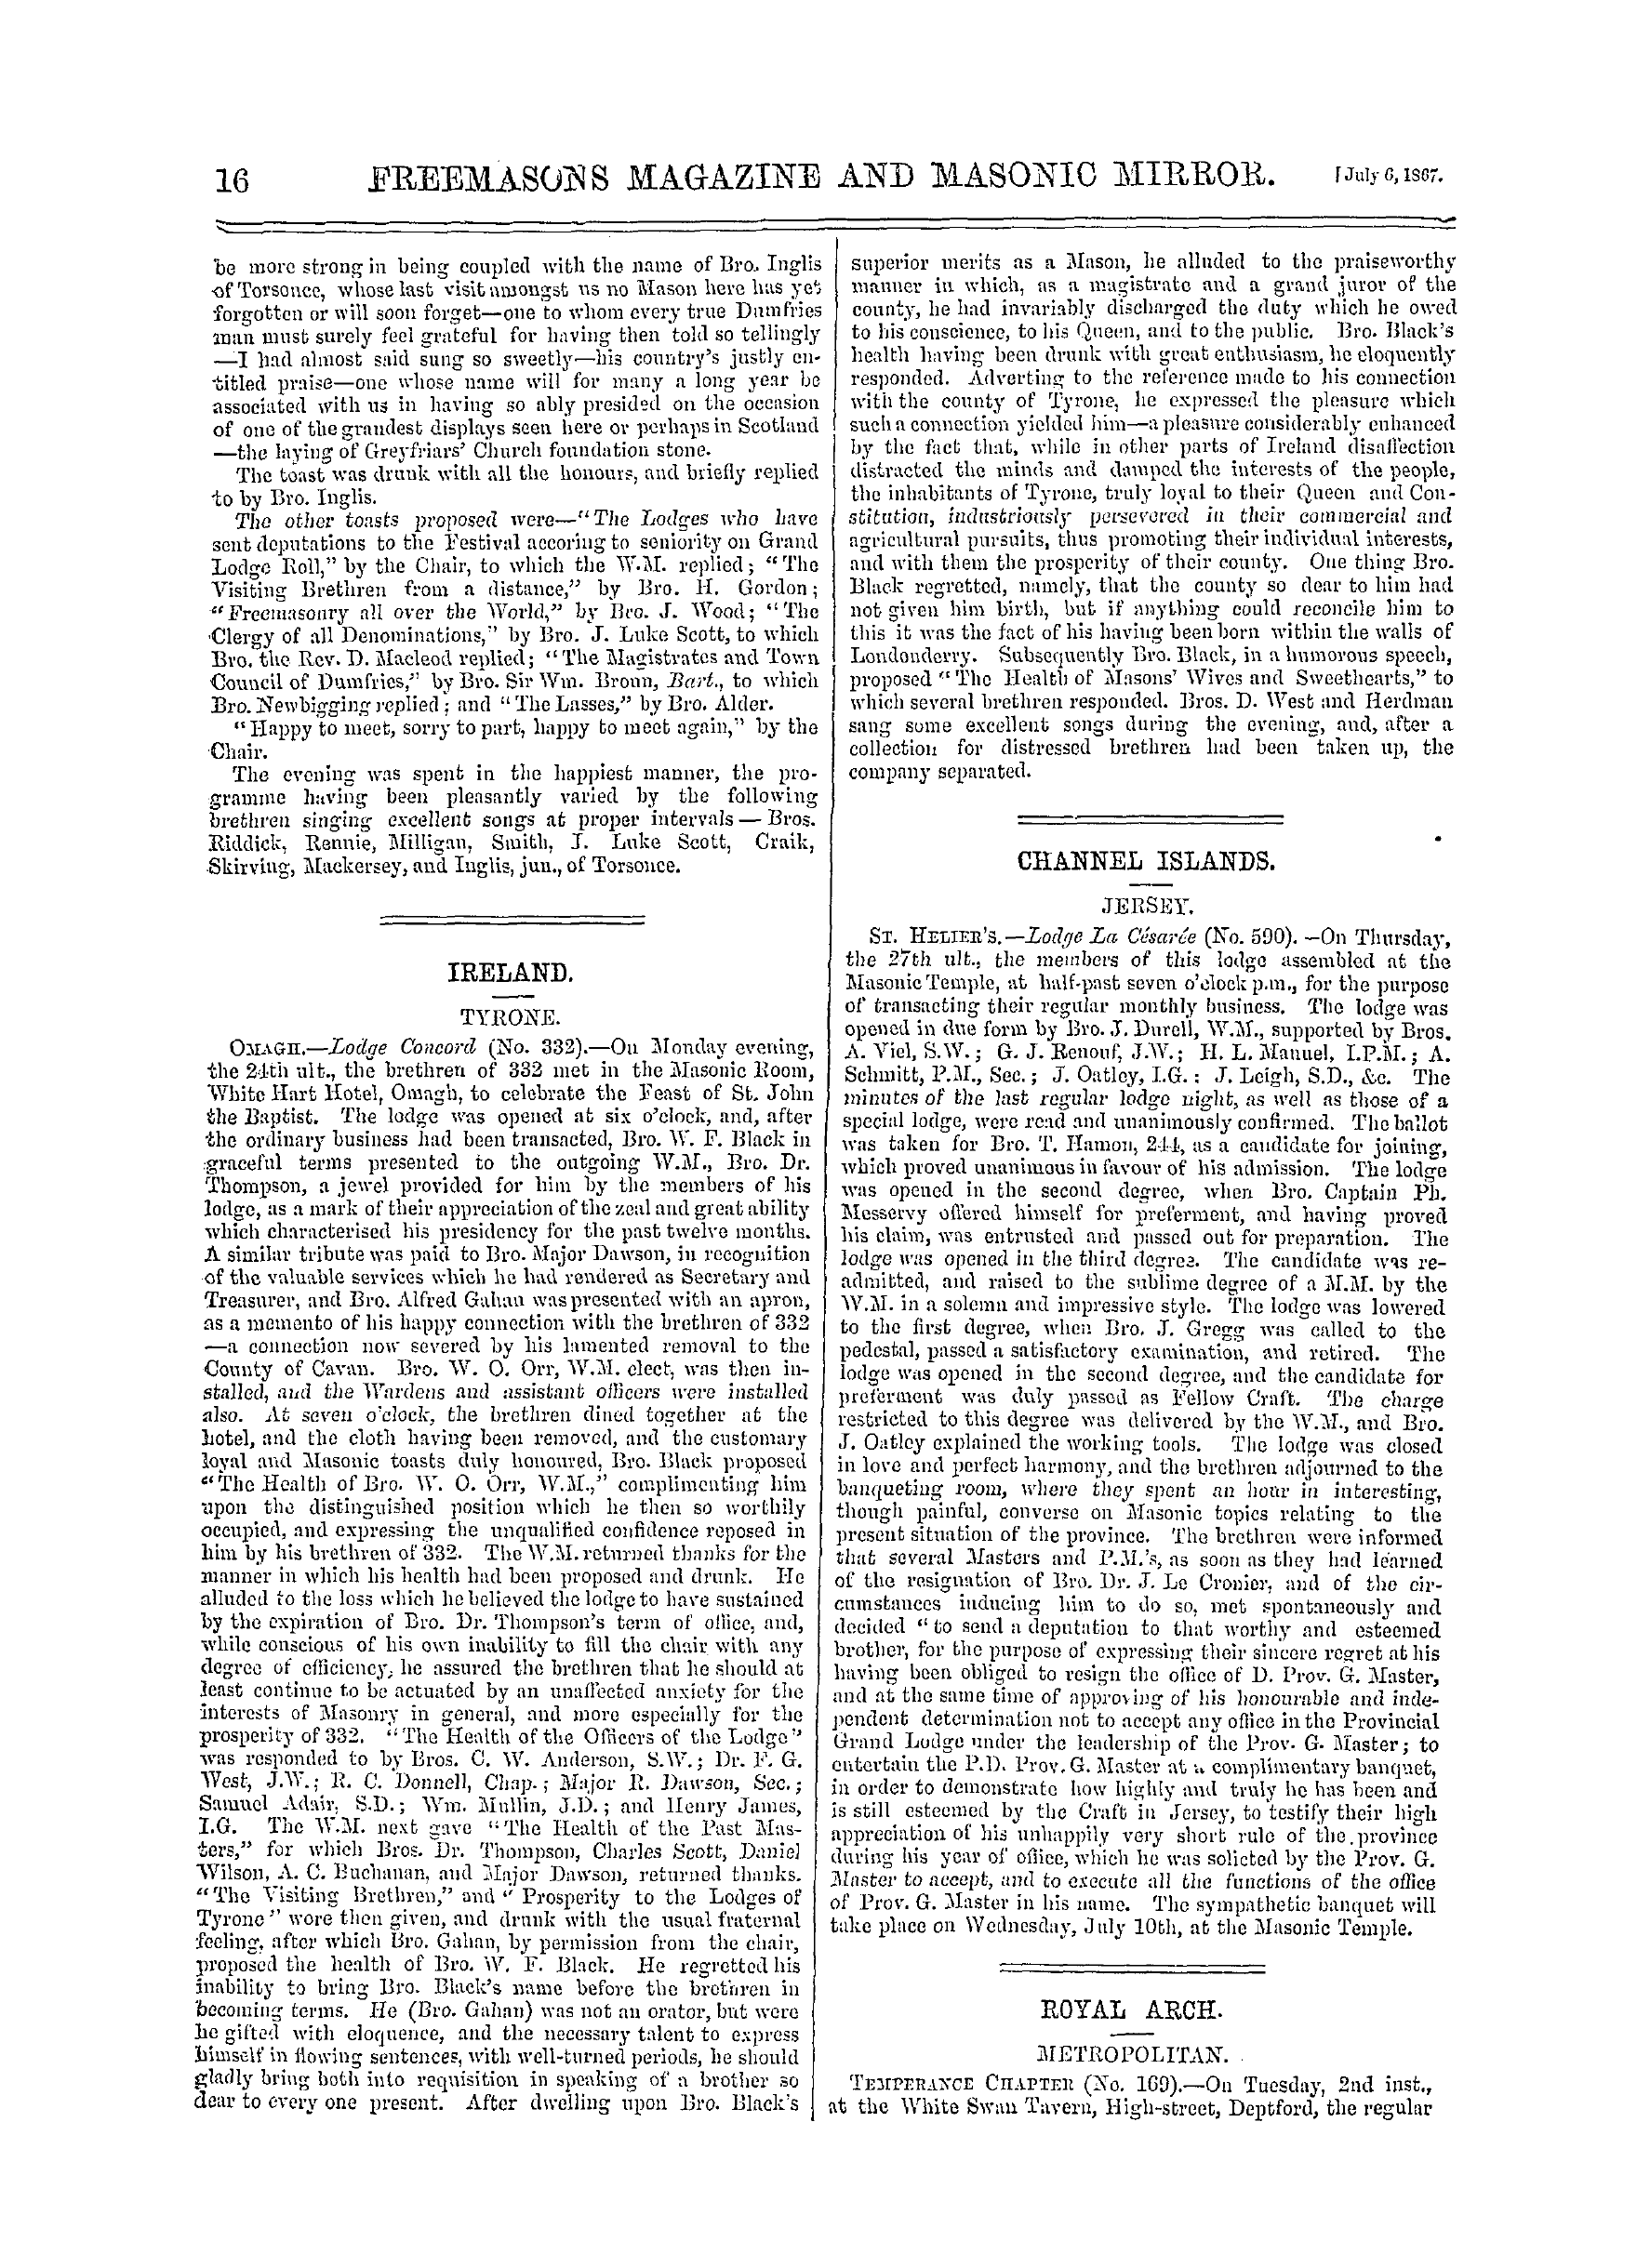 The Freemasons' Monthly Magazine: 1867-07-06: 24